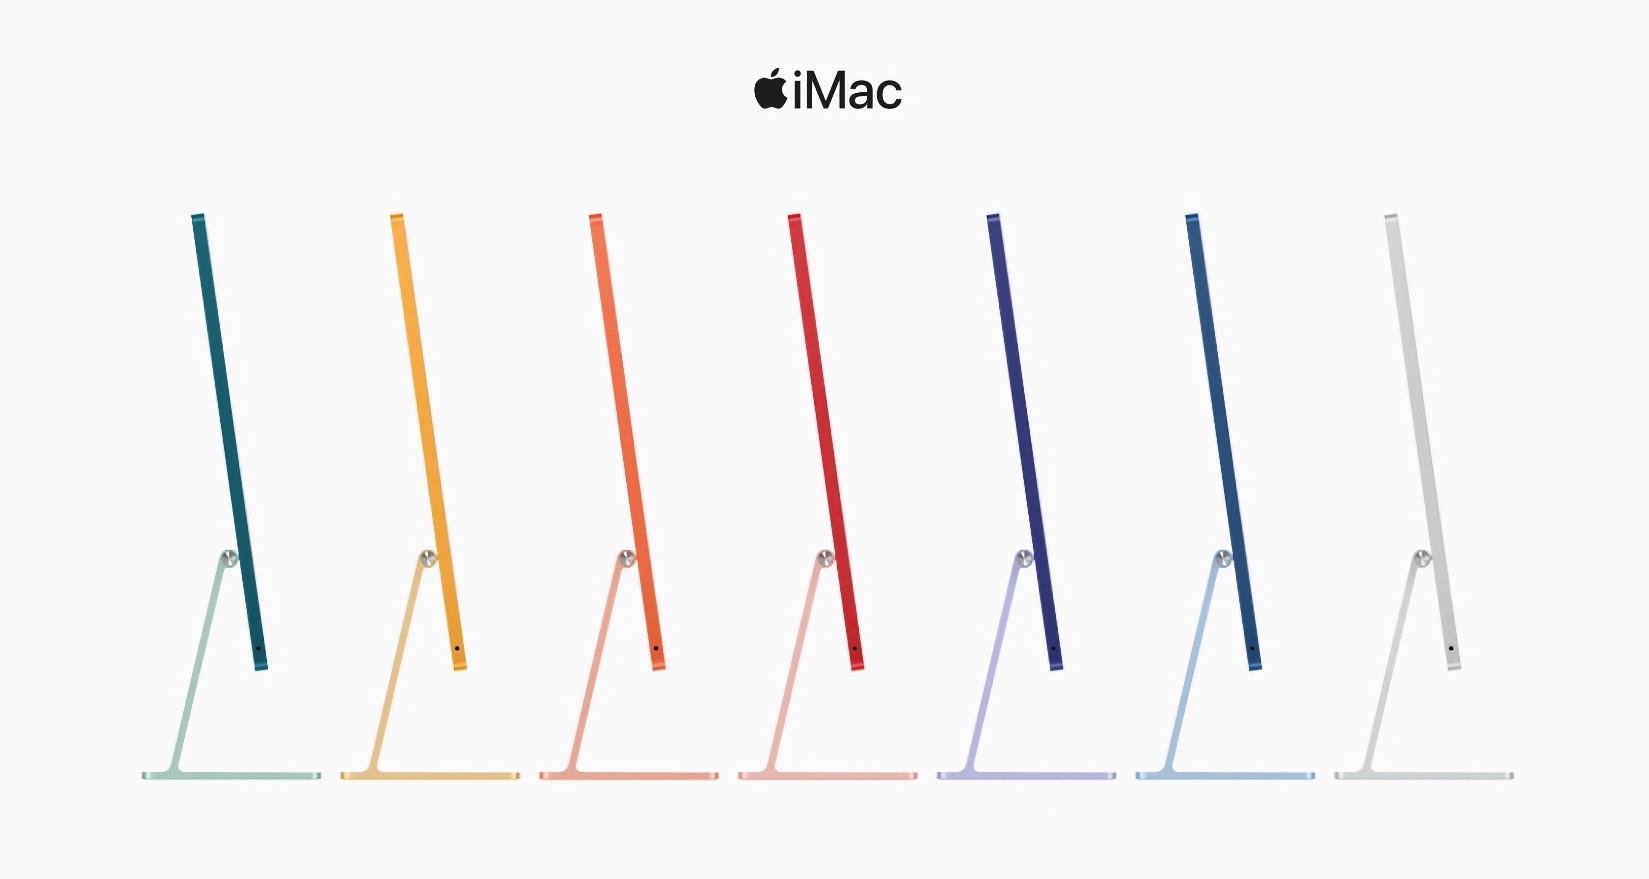 iMac mit M1-Octa-Core-Chip und Retina-Display ist bei Amazon mit einem Preisnachlass von 300 $ erhältlich